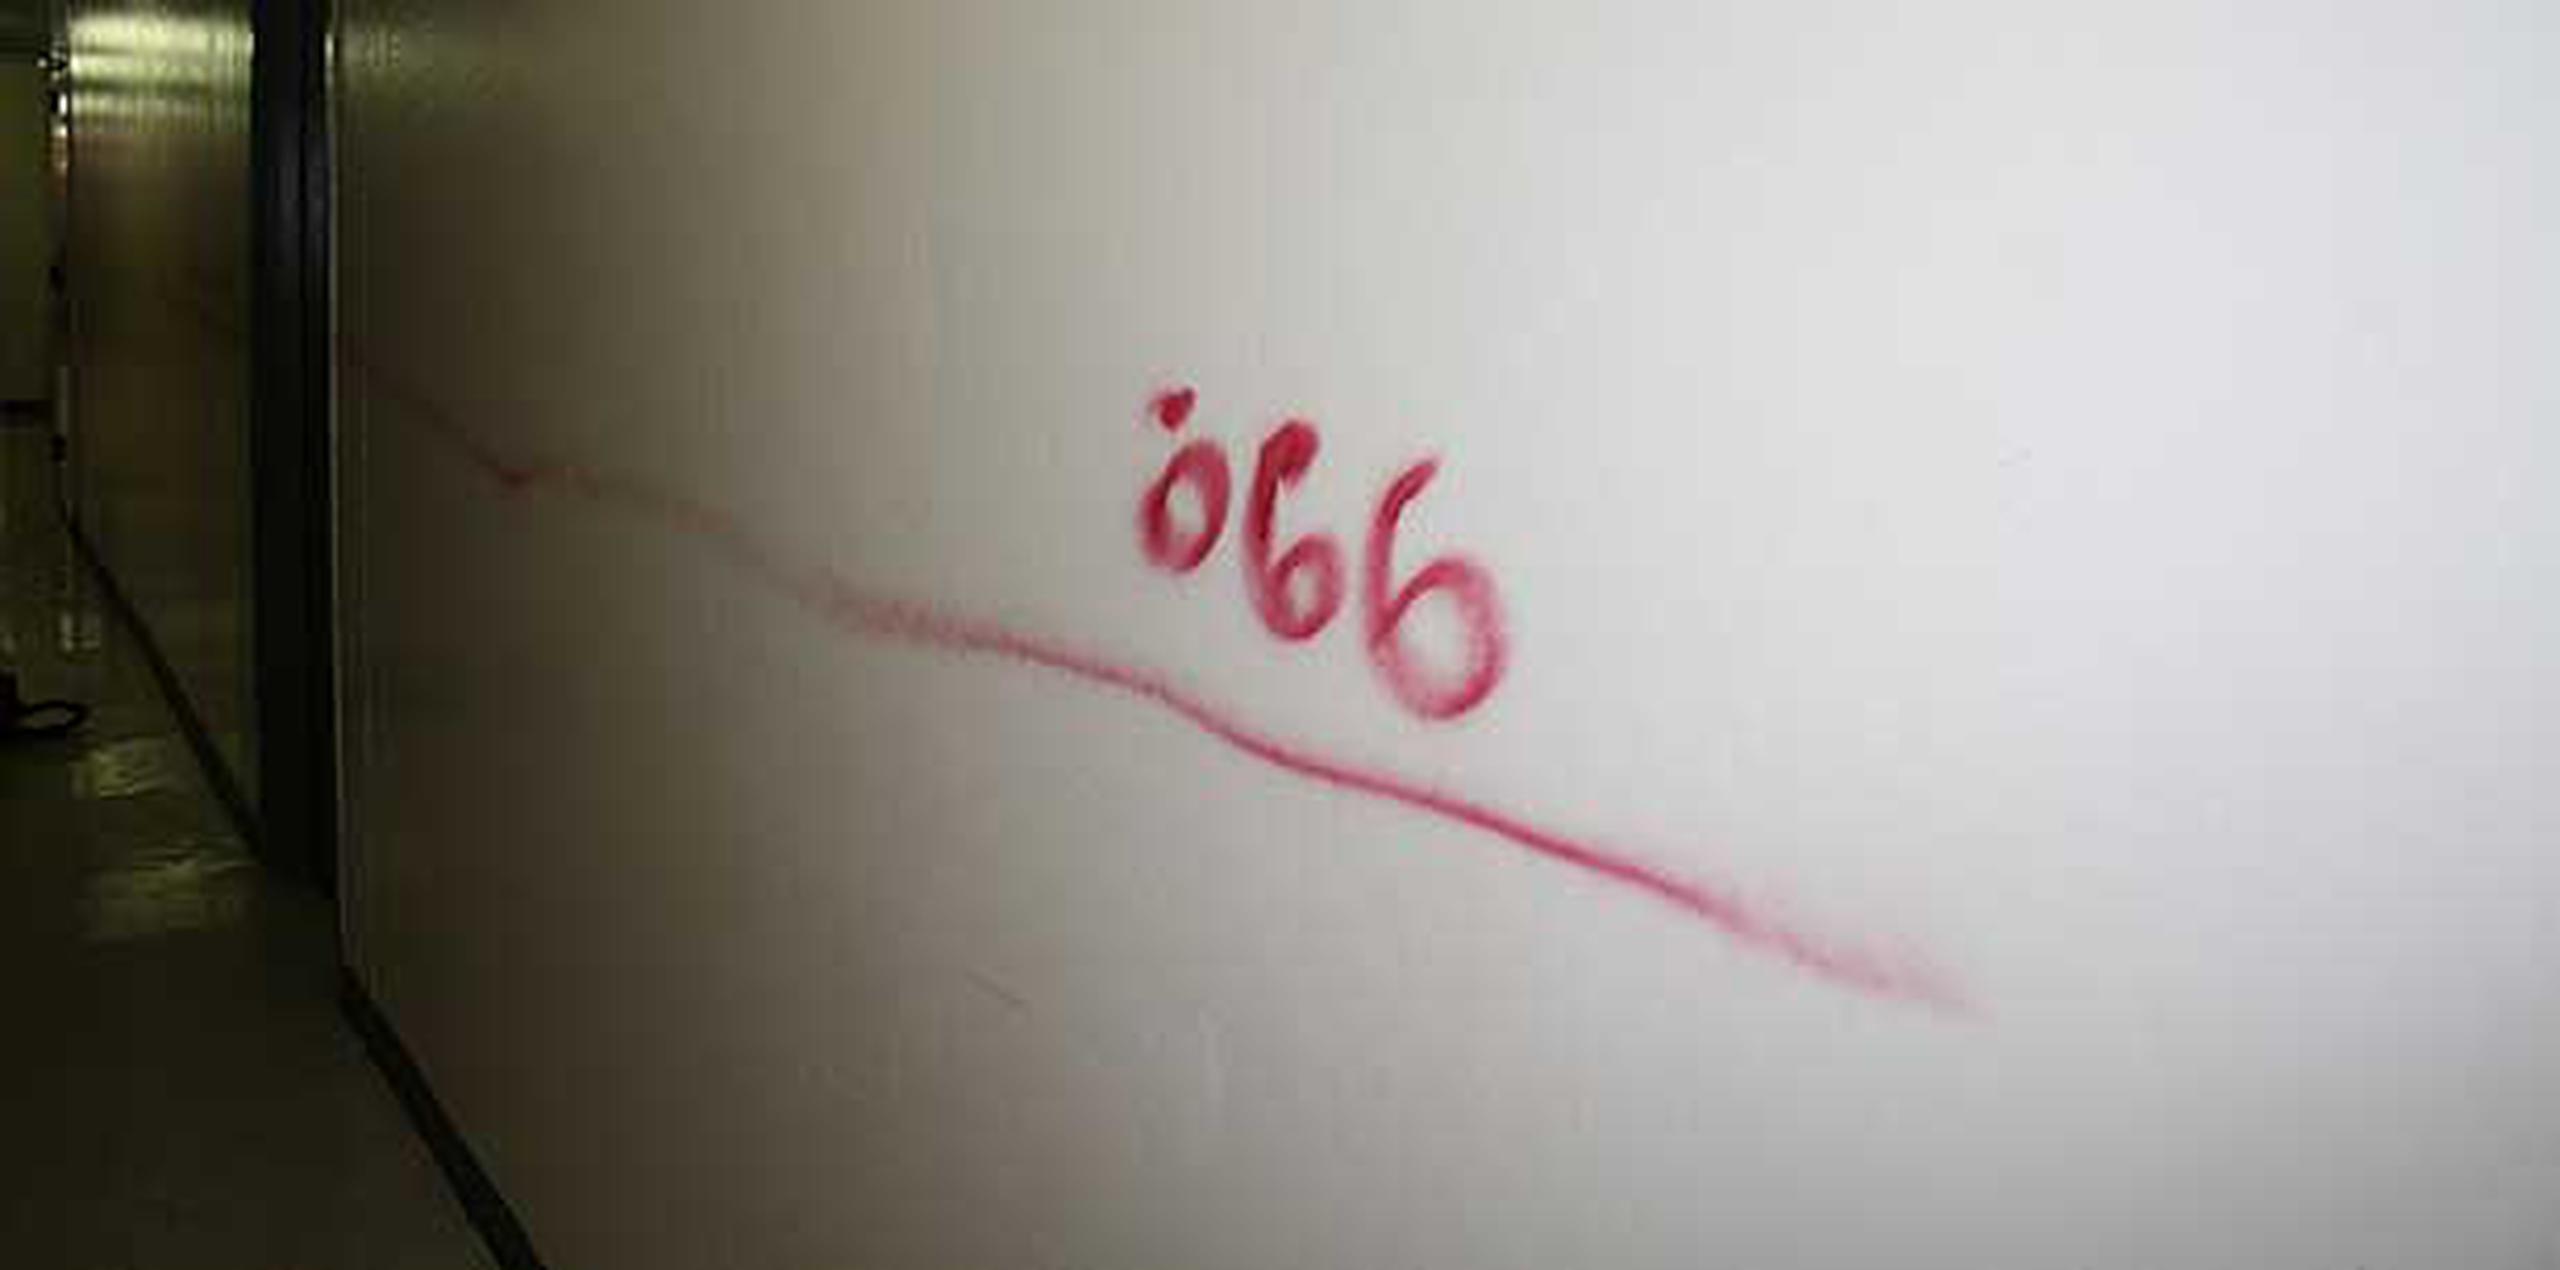 Días antes de su asesinato, la mujer se había querellado porque desconocidos habían escrito el número “666”, en la pared de su apartamento. (Archivo)